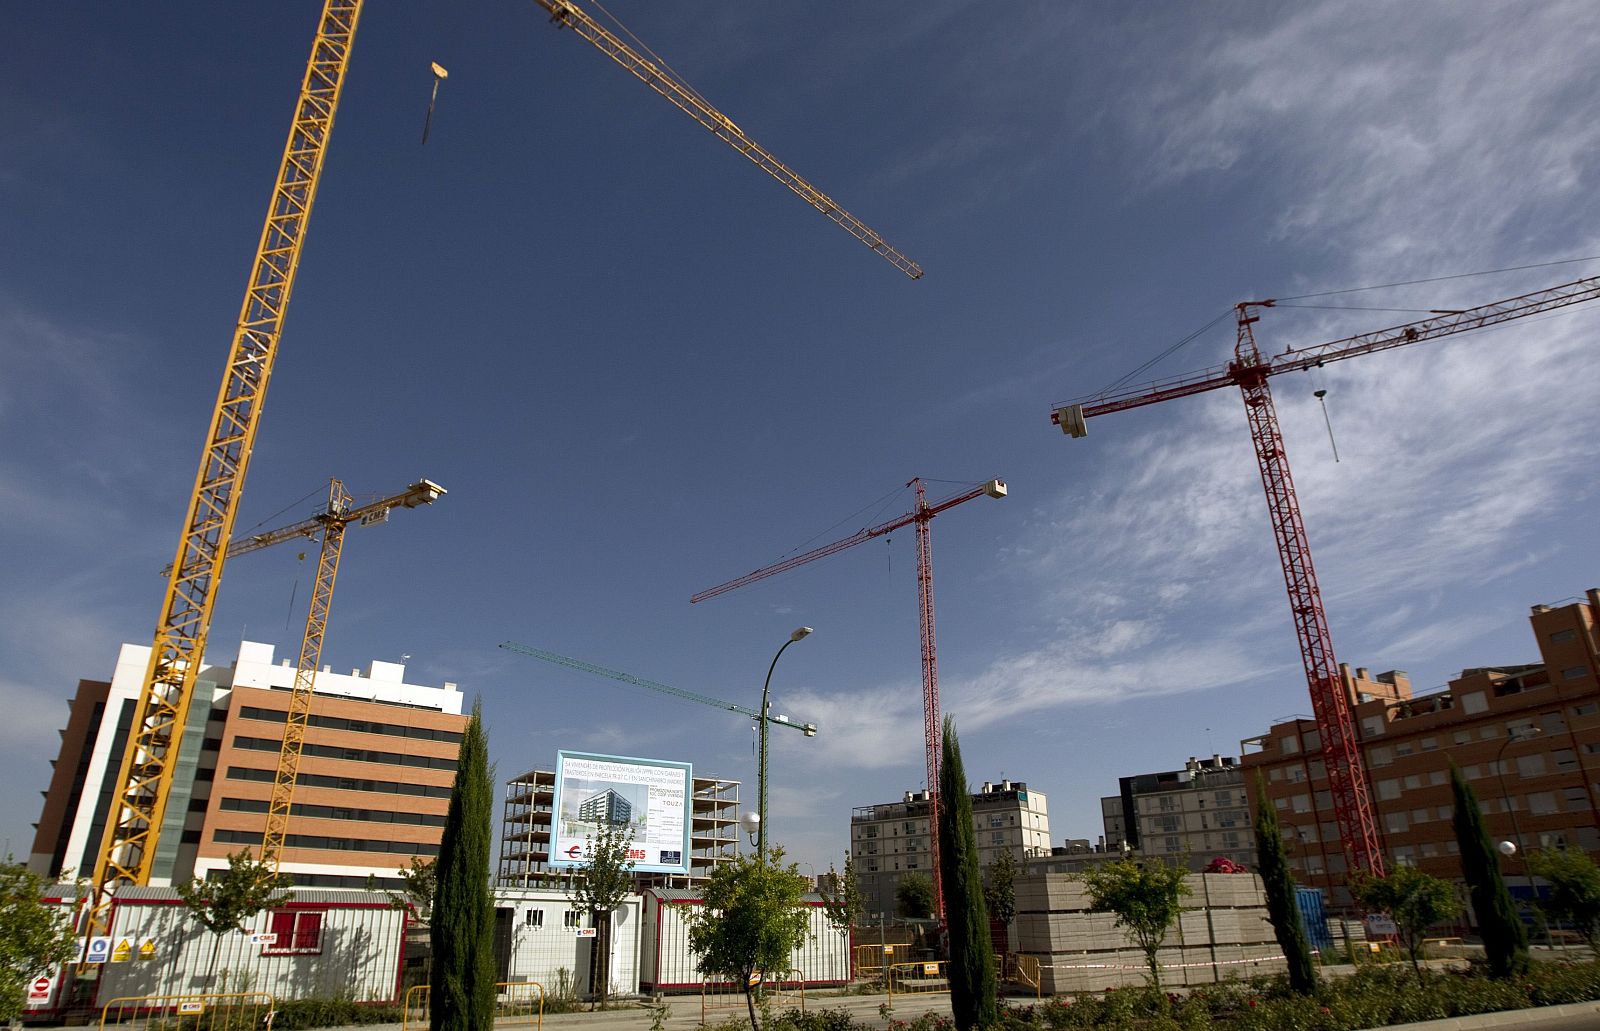 Imágenes de grúas en un área residencial en construcción de Madrid